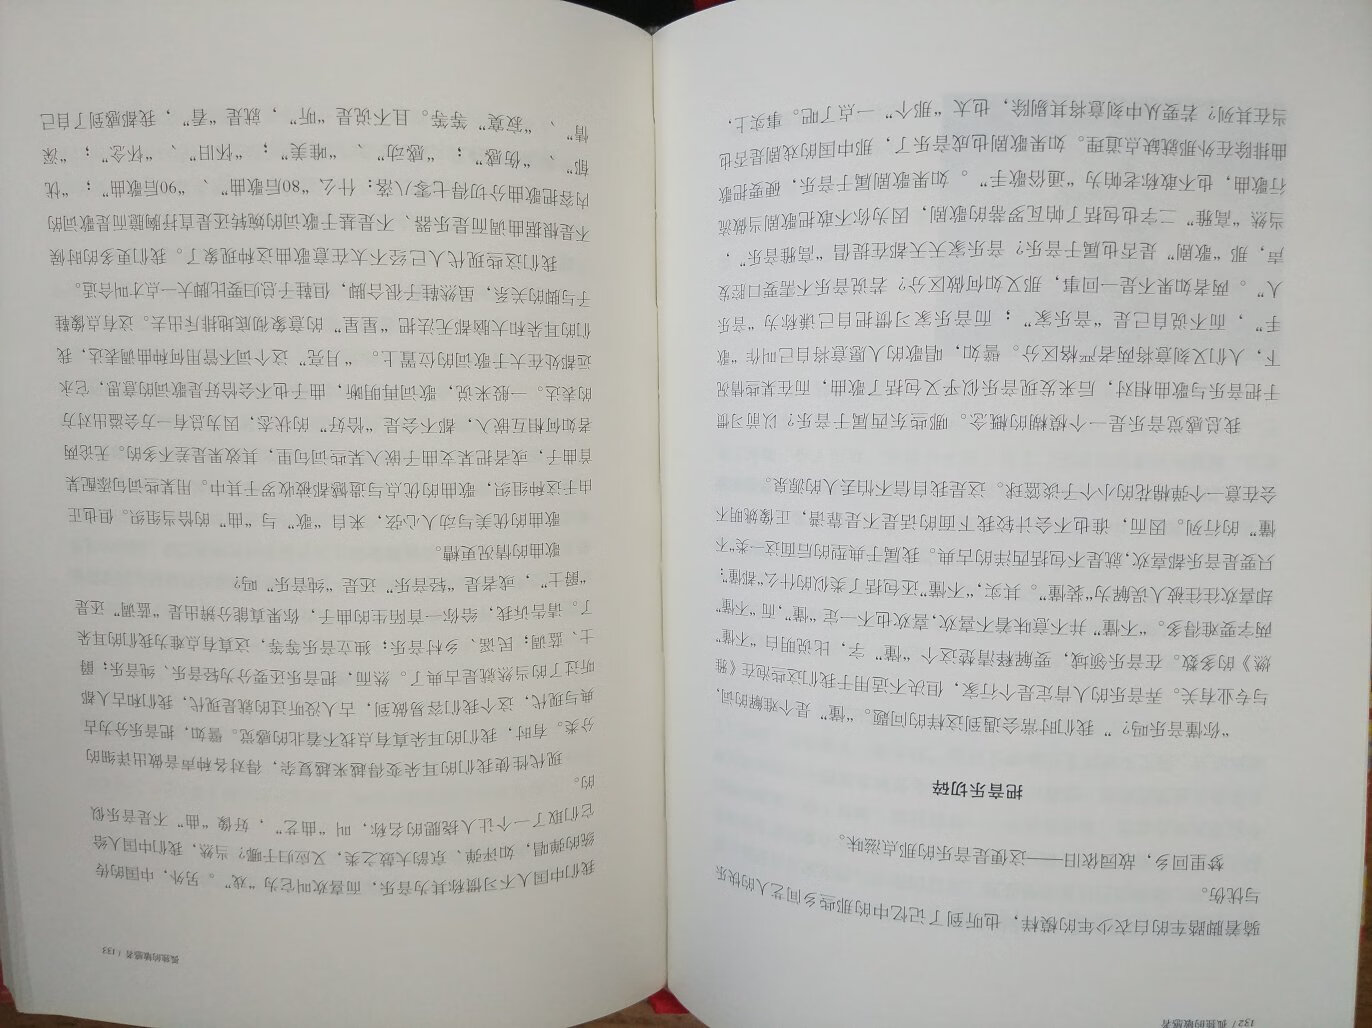 王老师关于宪政方面的书看了不少，这本艺术方面的书让我知道他的另一面。